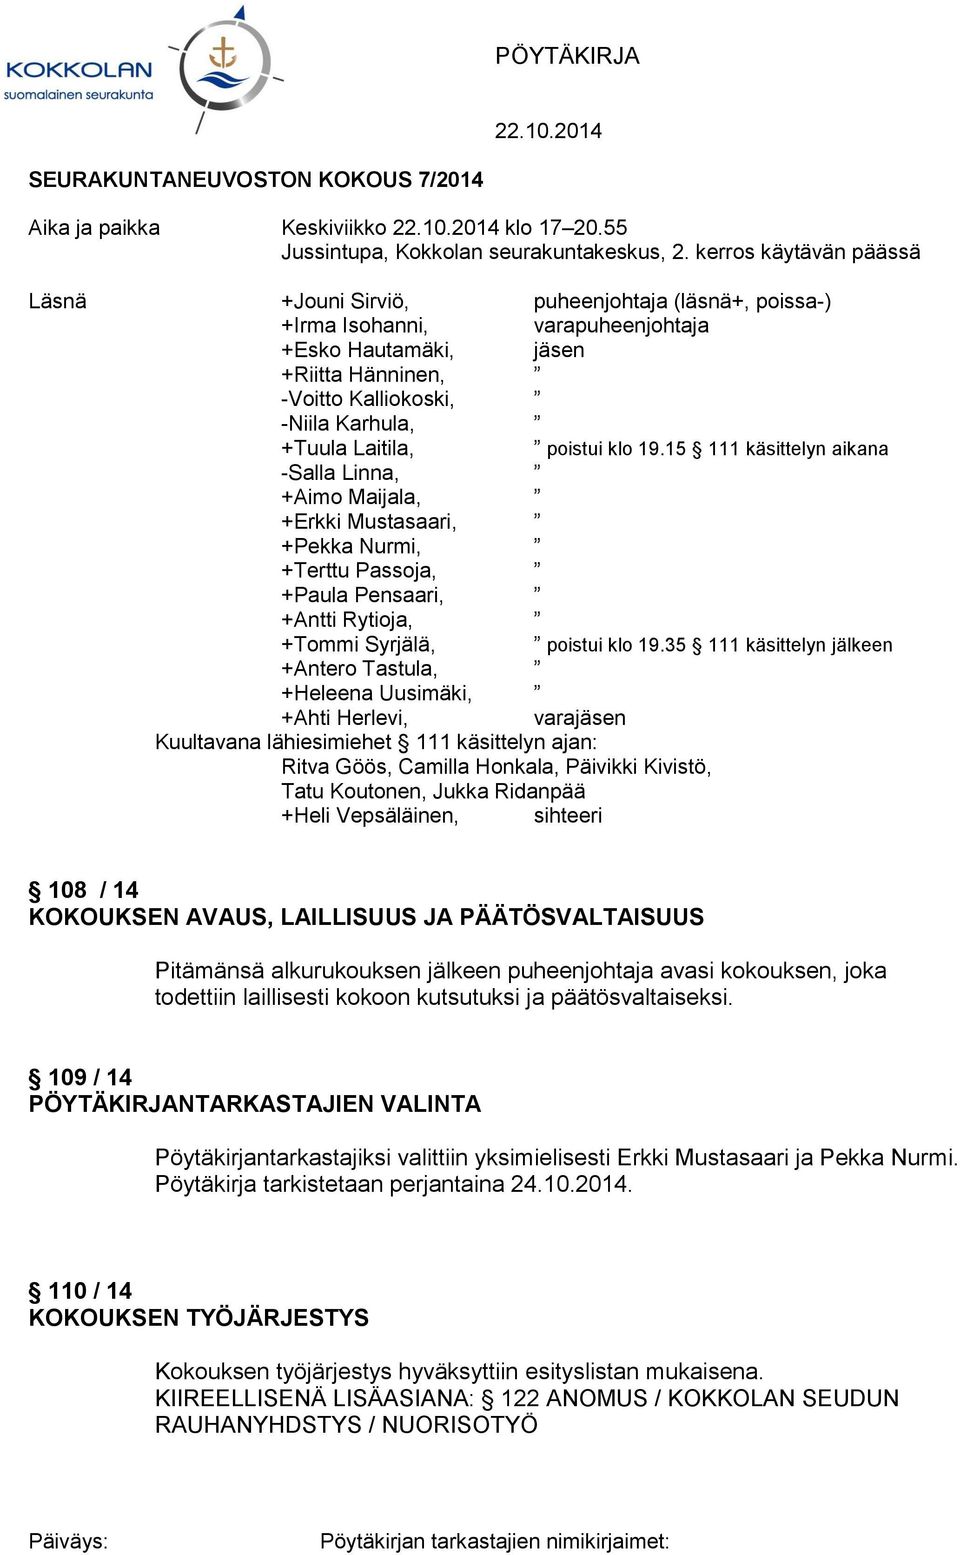 Laitila, poistui klo 19.15 111 käsittelyn aikana -Salla Linna, +Aimo Maijala, +Erkki Mustasaari, +Pekka Nurmi, +Terttu Passoja, +Paula Pensaari, +Antti Rytioja, +Tommi Syrjälä, poistui klo 19.